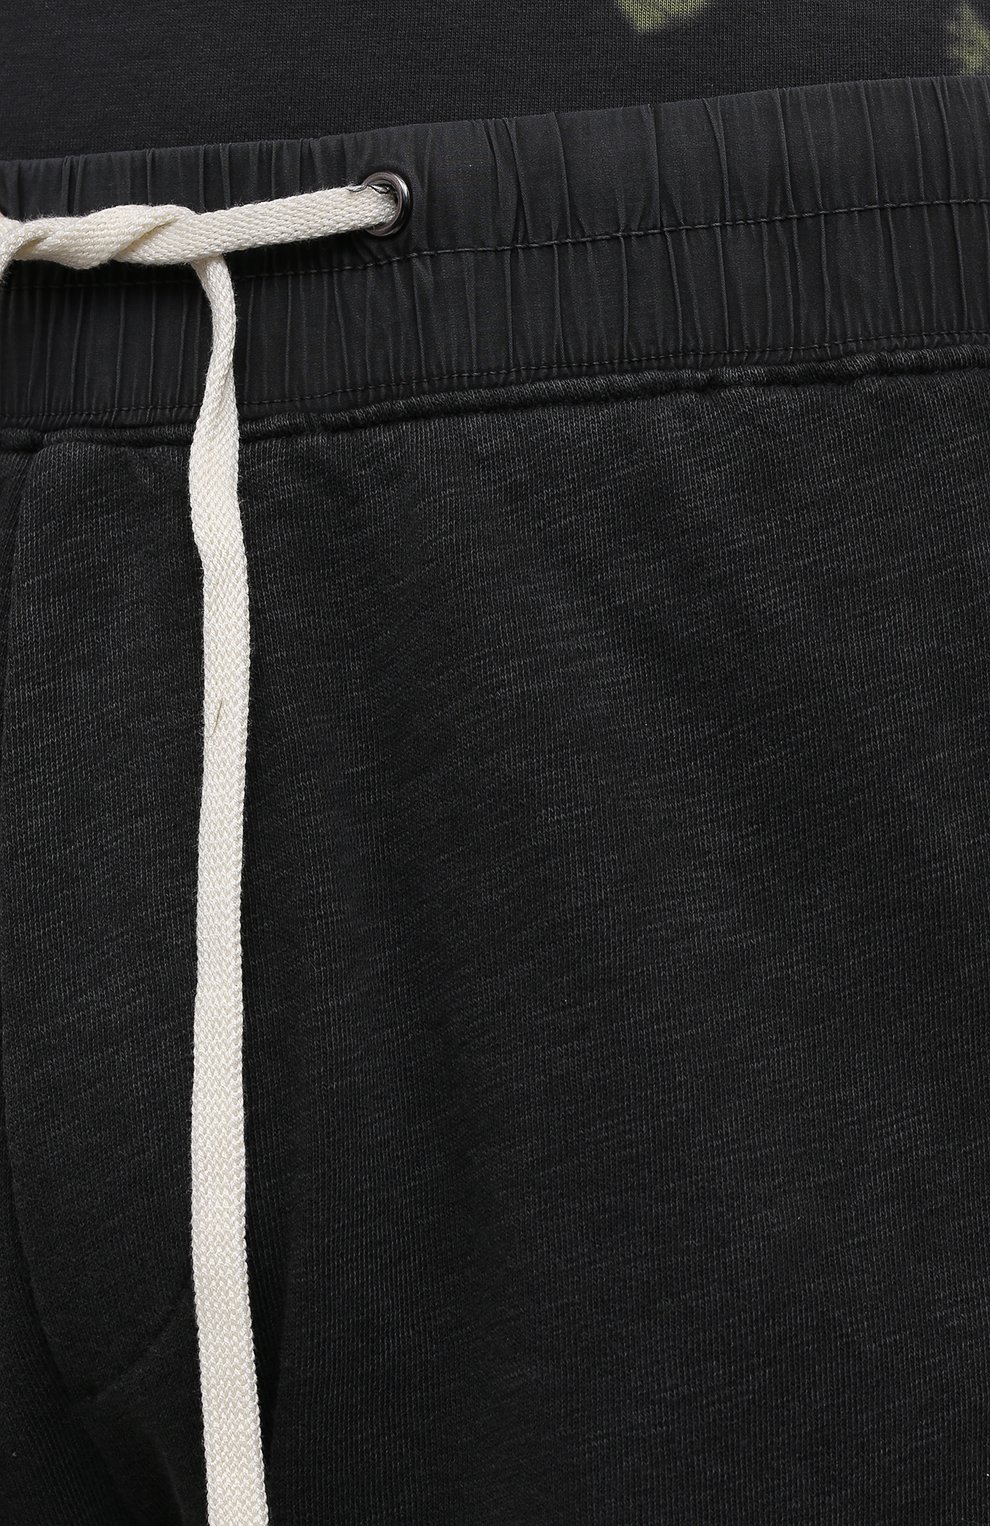 Мужские хлопковые шорты JAMES PERSE темно-серого цвета, арт. MXA4238 | Фото 5 (Длина Шорты М: До колена; Случай: Повседневный; Материал внешний: Хлопок; Стили: Спорт-шик)